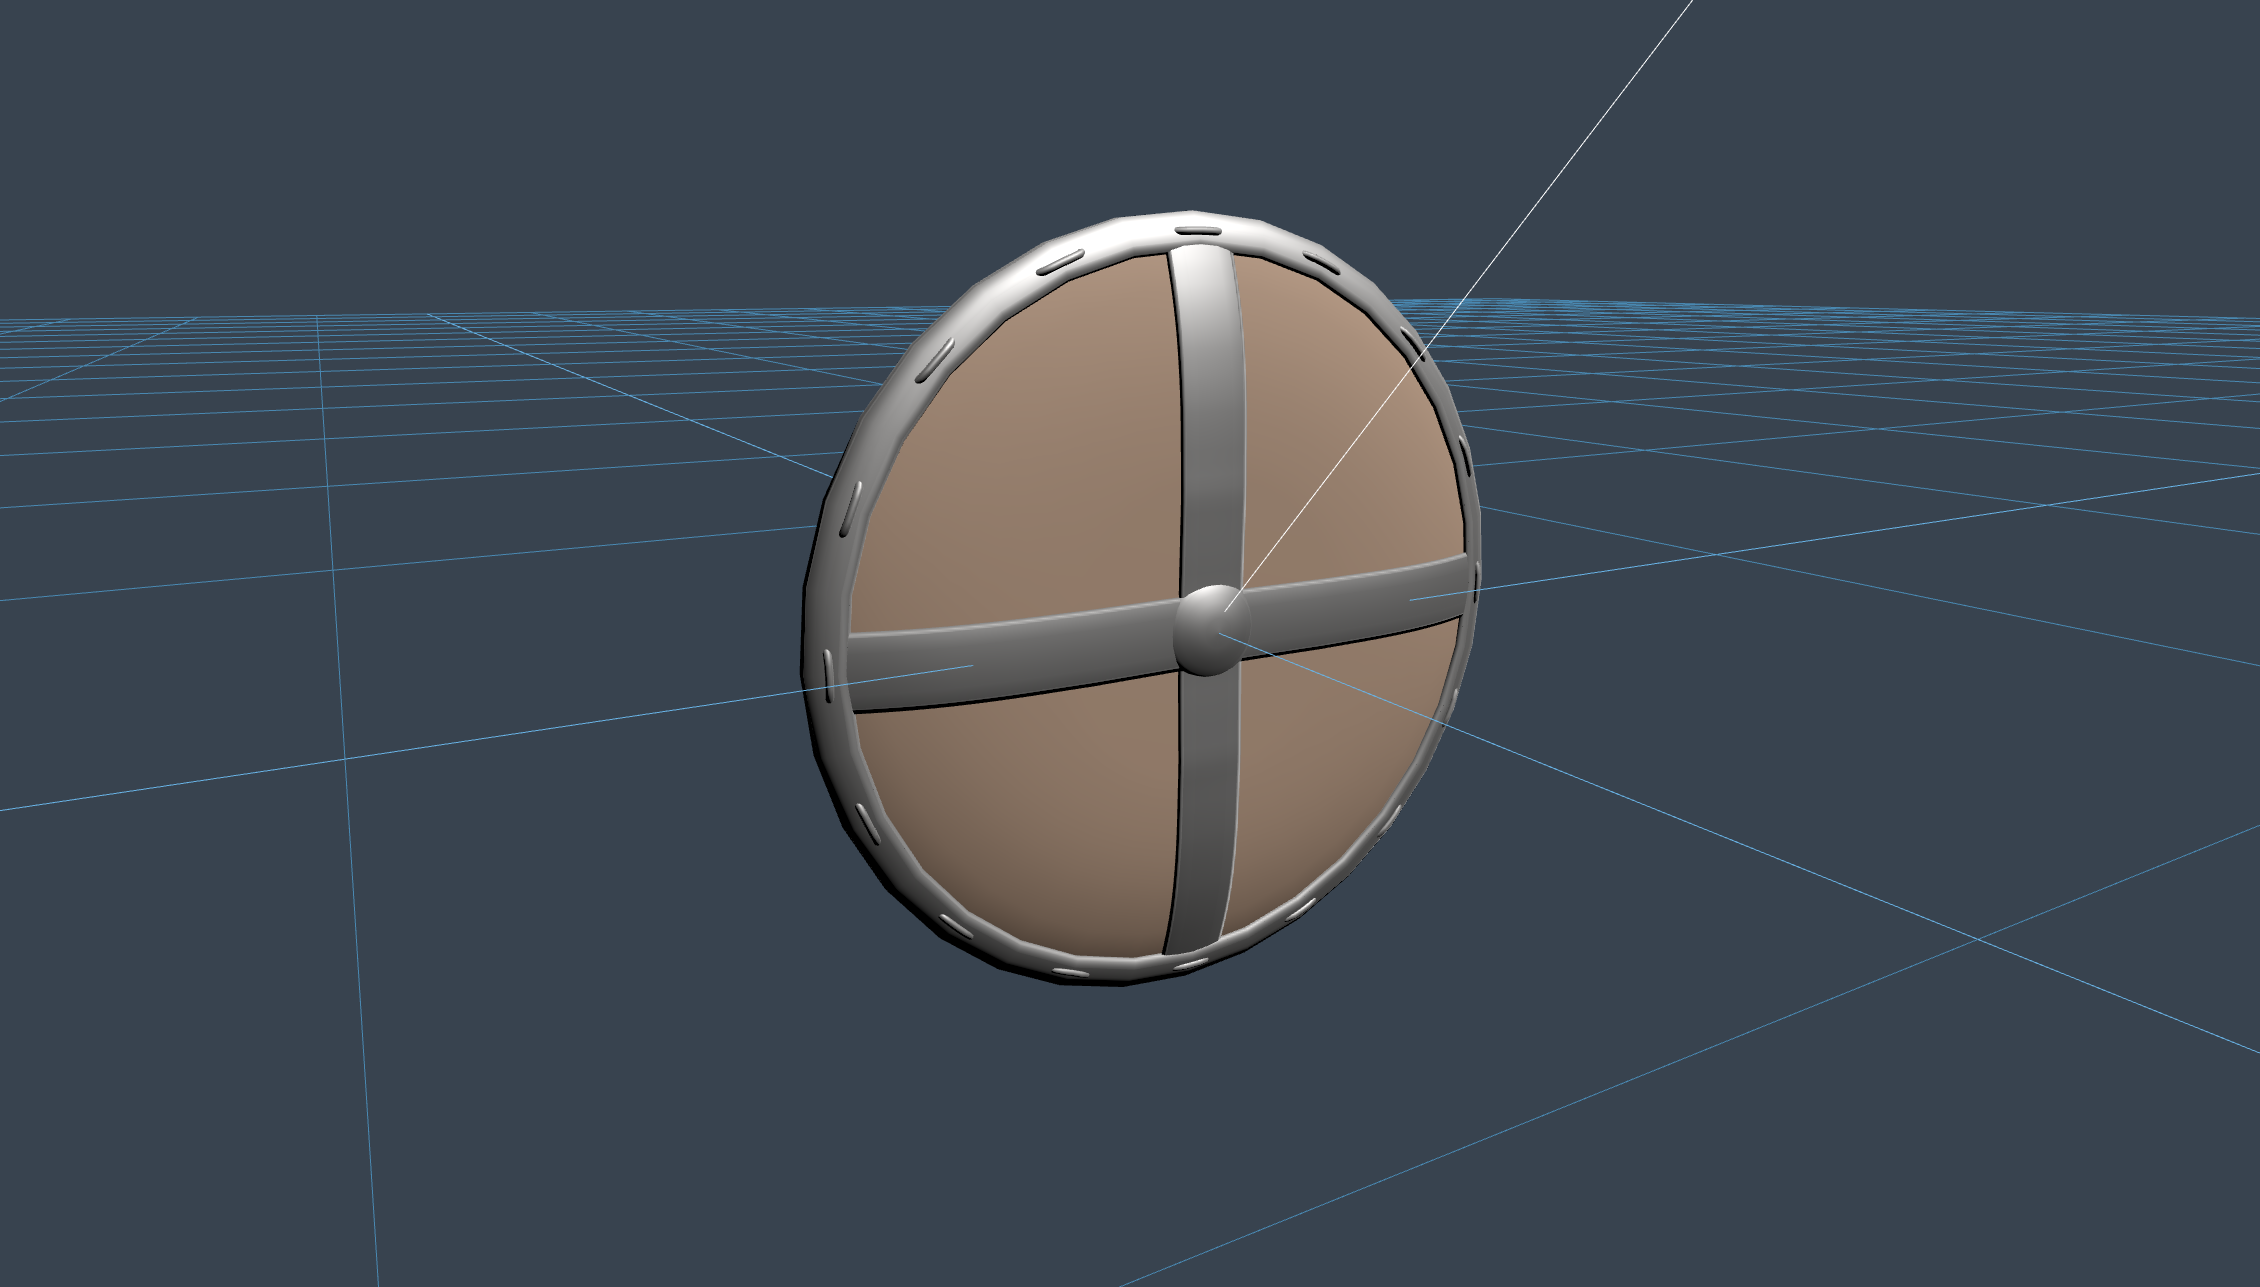 Shield - nilikha ni Niilo Korppi gamit ang 3D